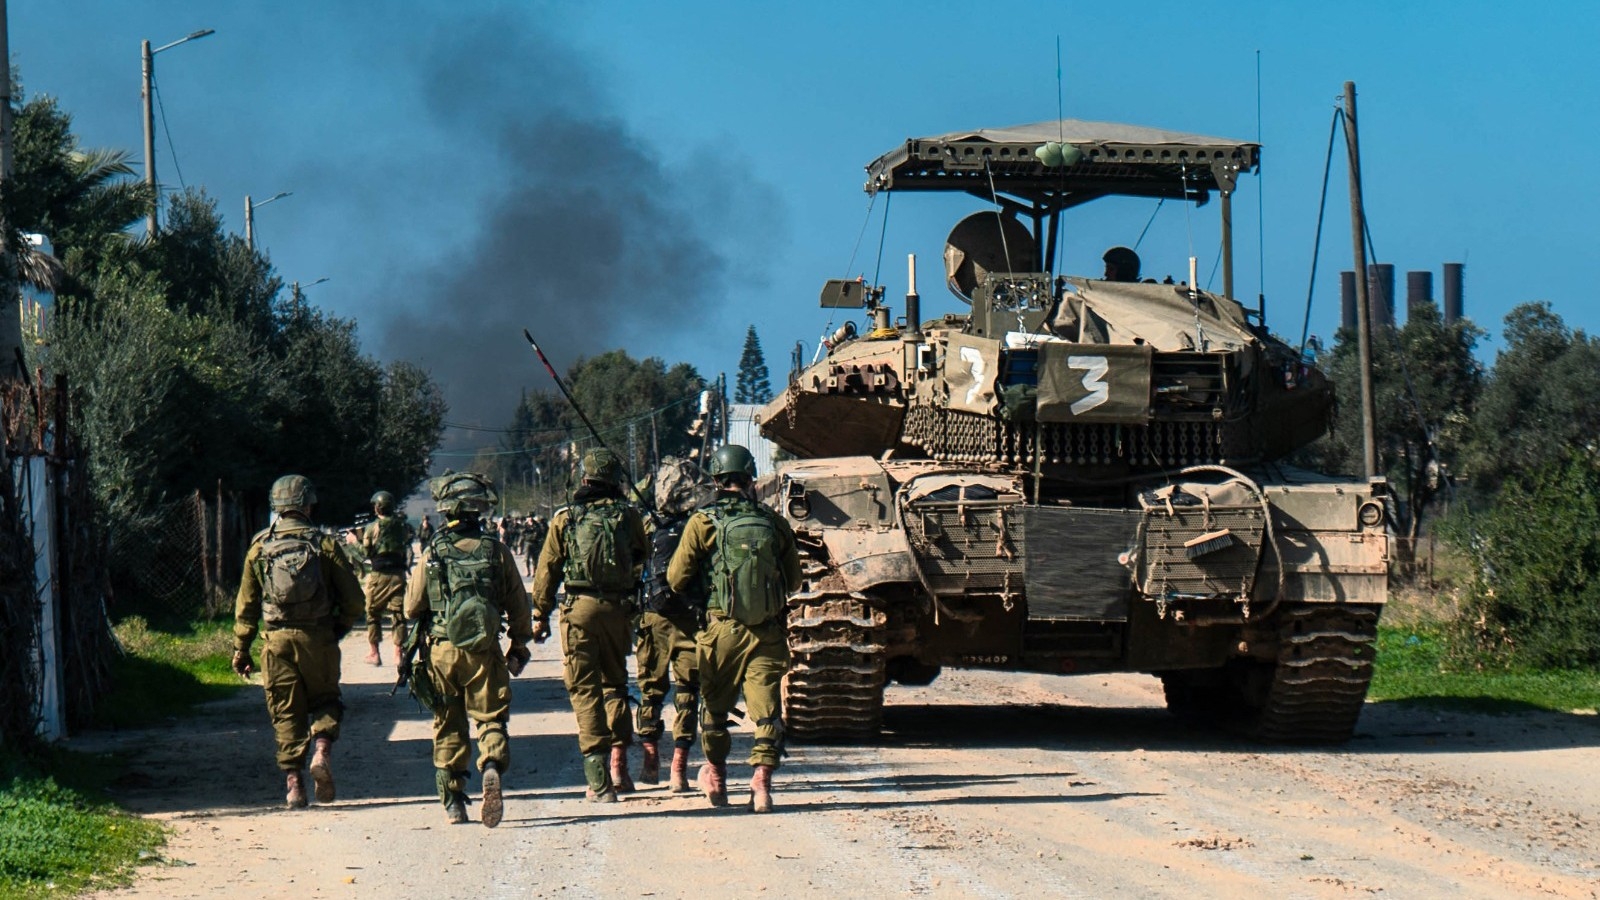 De la fumée s’élève d’une zone de la bande de Gaza alors que les soldats israéliens avancent vers le centre et le sud de l’enclave assiégée (AFP/Handout/Israeli army)